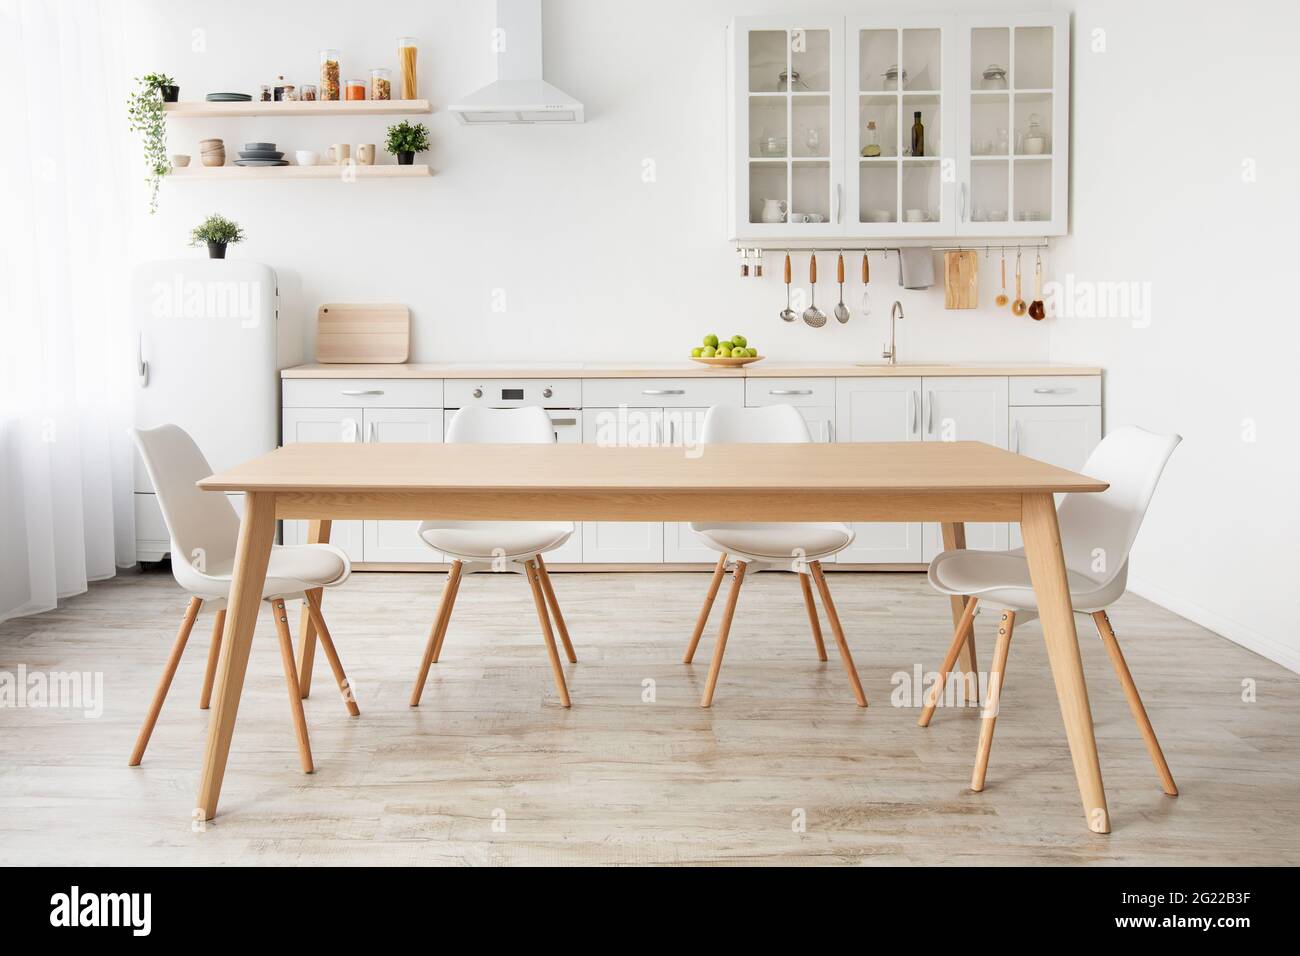 Classica cucina bianca scandinava con dettagli in legno. Mobili moderni con accessori e vari utensili Foto Stock